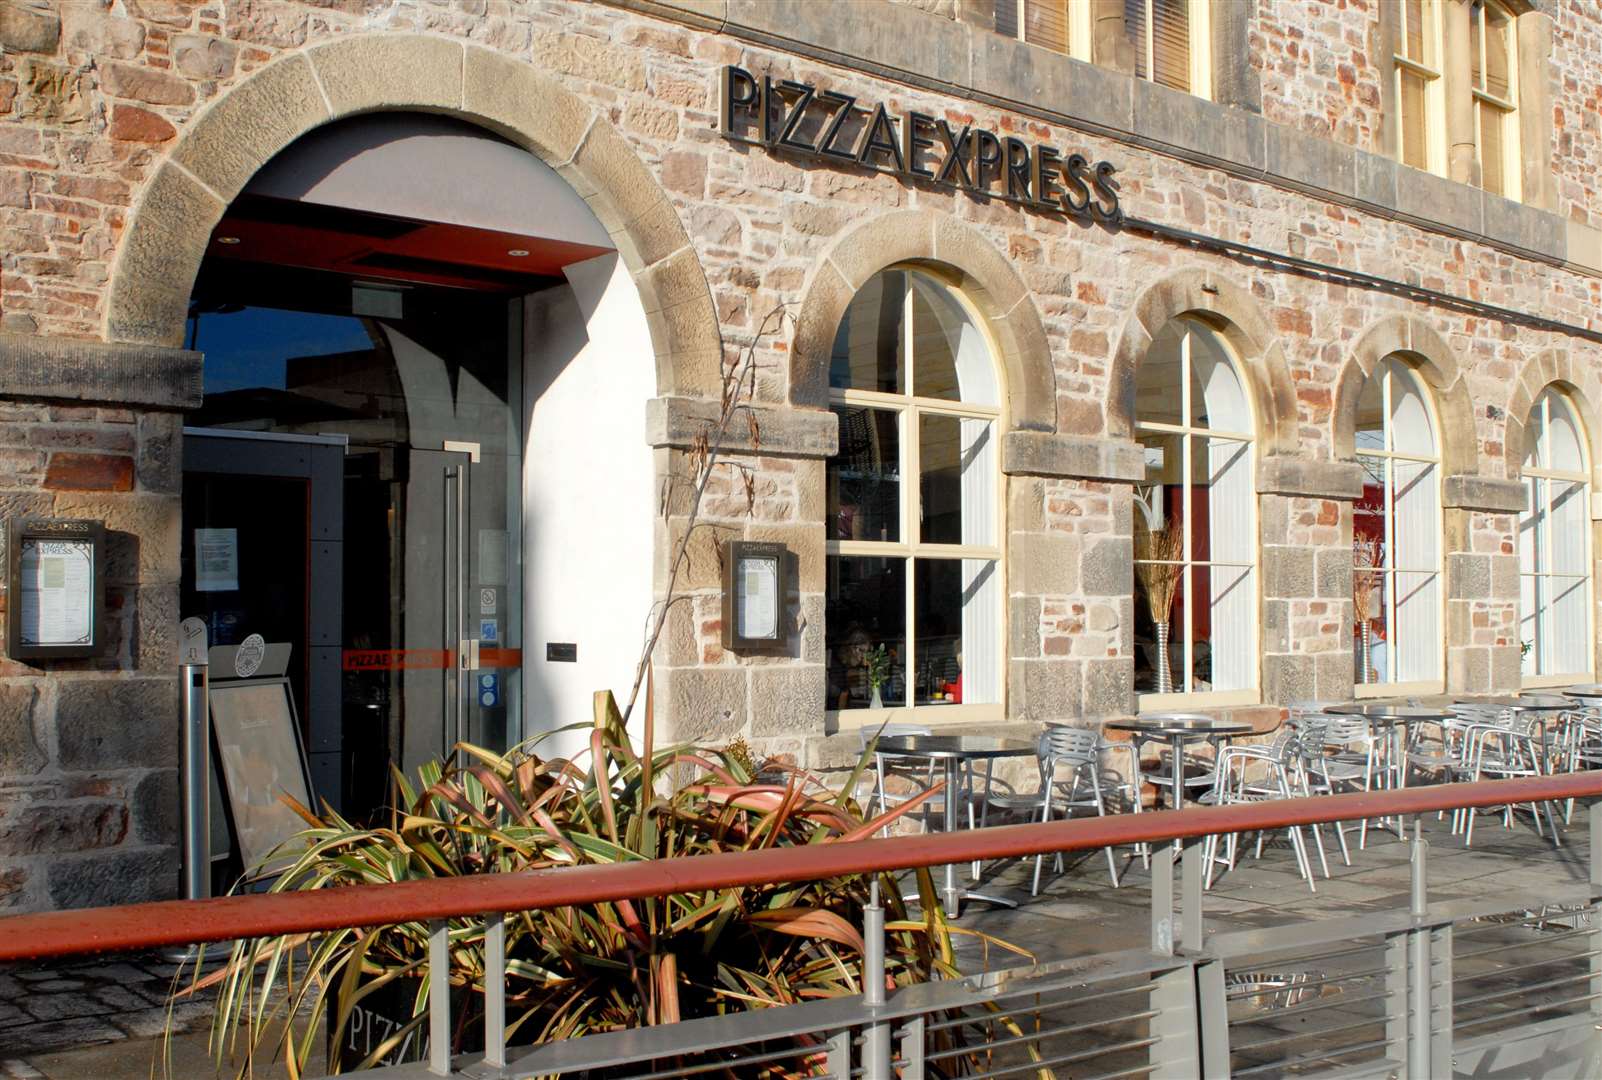 Pizza Express in Inverness's Falcon Square.